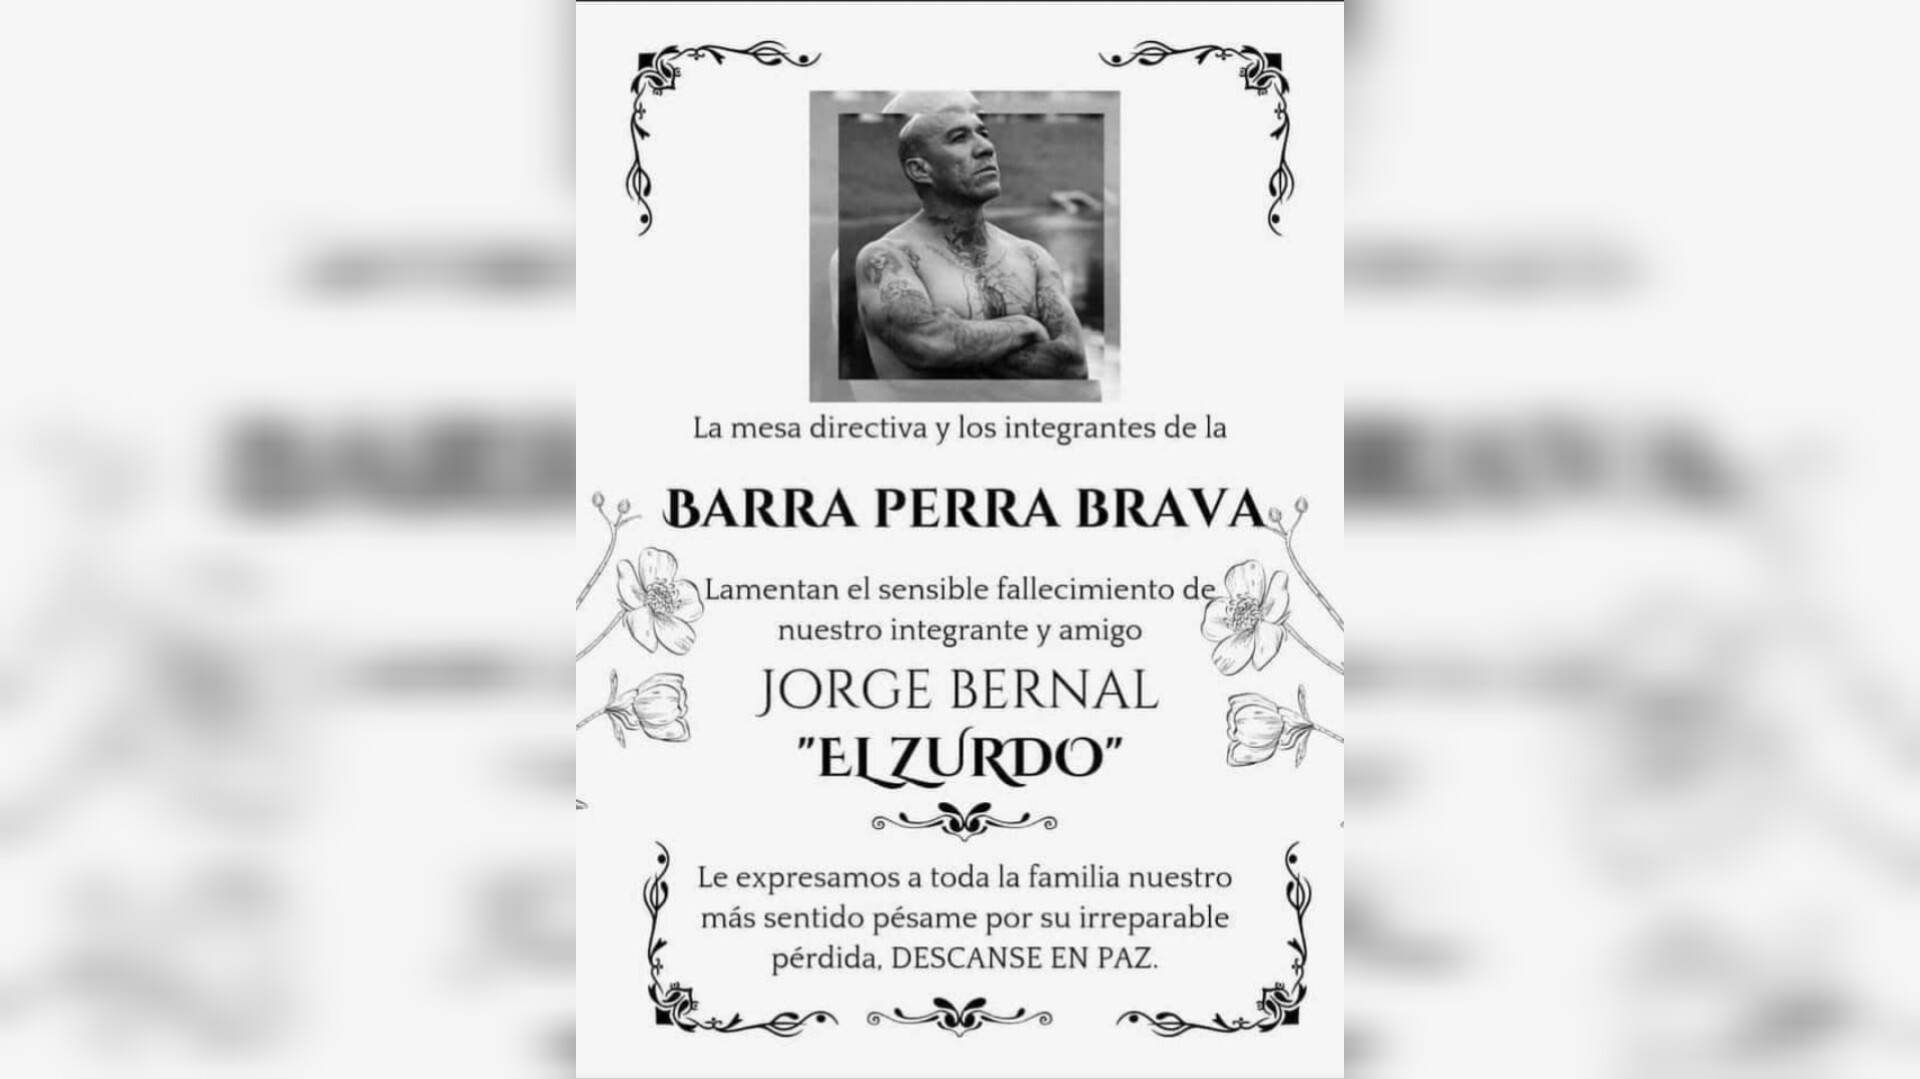 Muere El Zurdo, miembro histórico de la Perra Brava. Foto: Barra Perra Brava